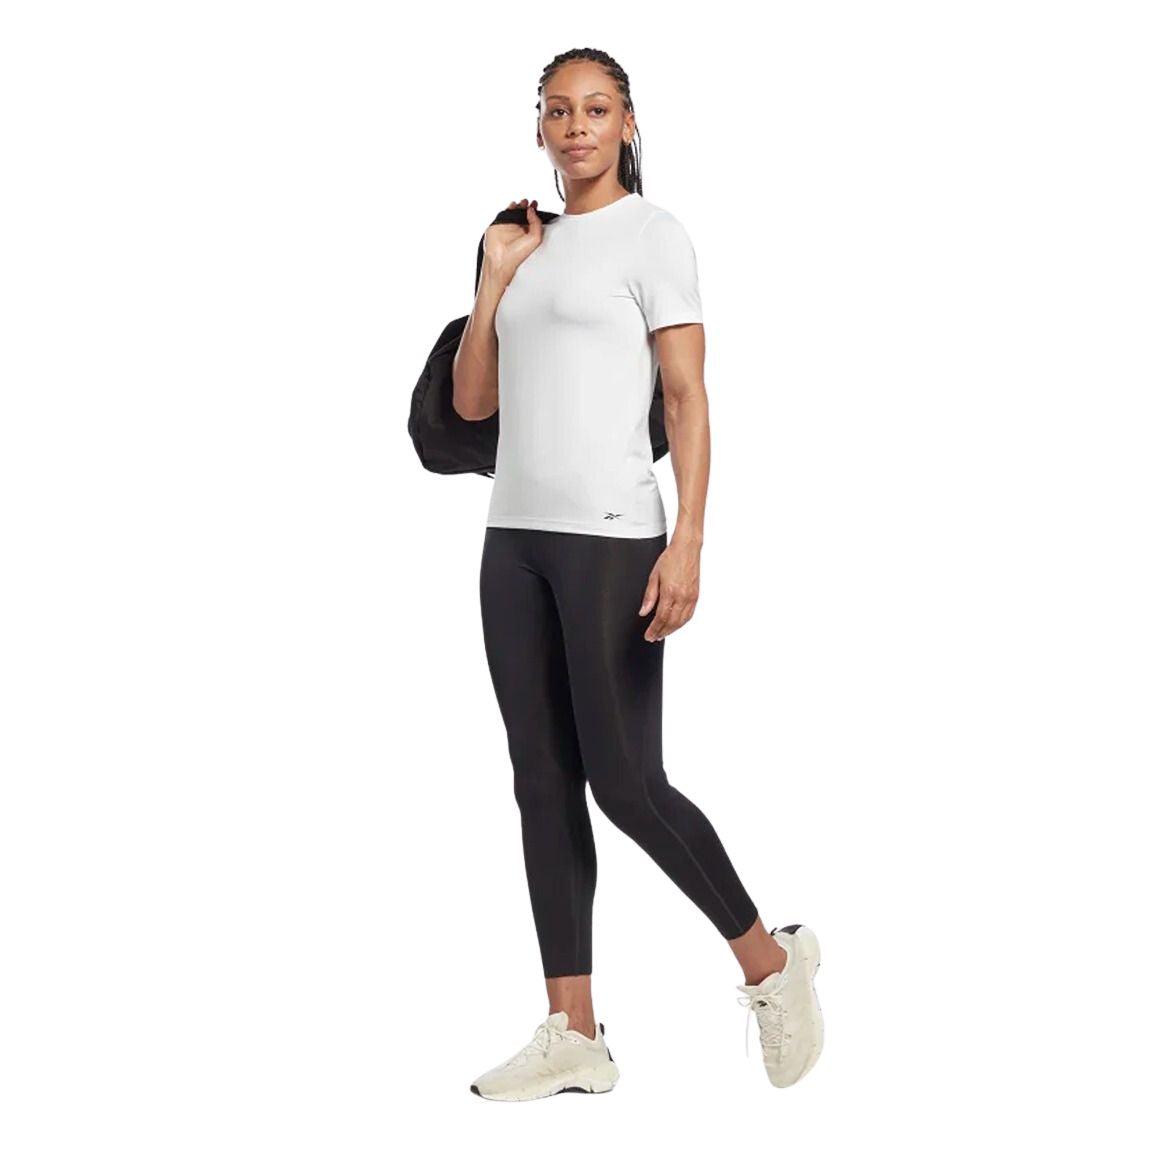 Reebok Workout Ready Speedwick T-Shirt - Women - Sports Excellence